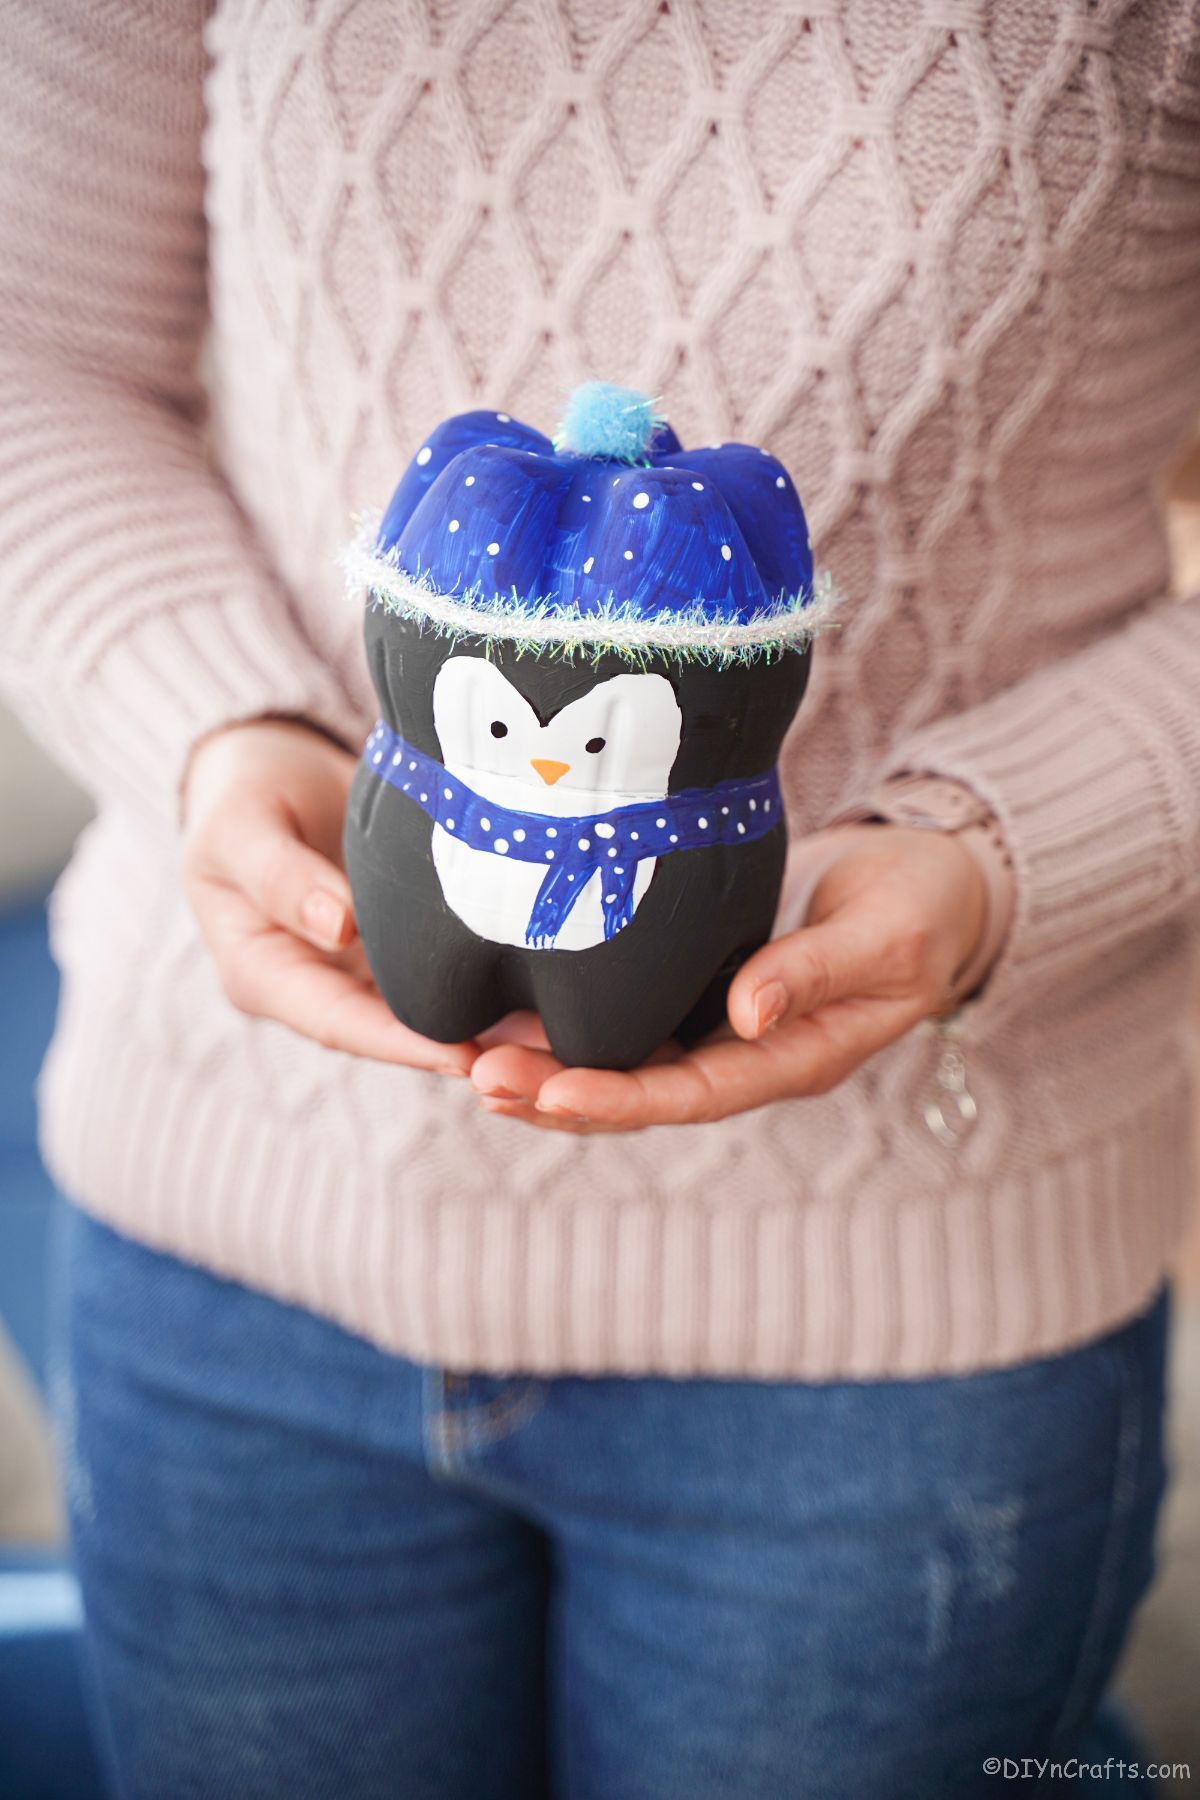 pingvin iz mini steklenice z modrim klobukom v rokah